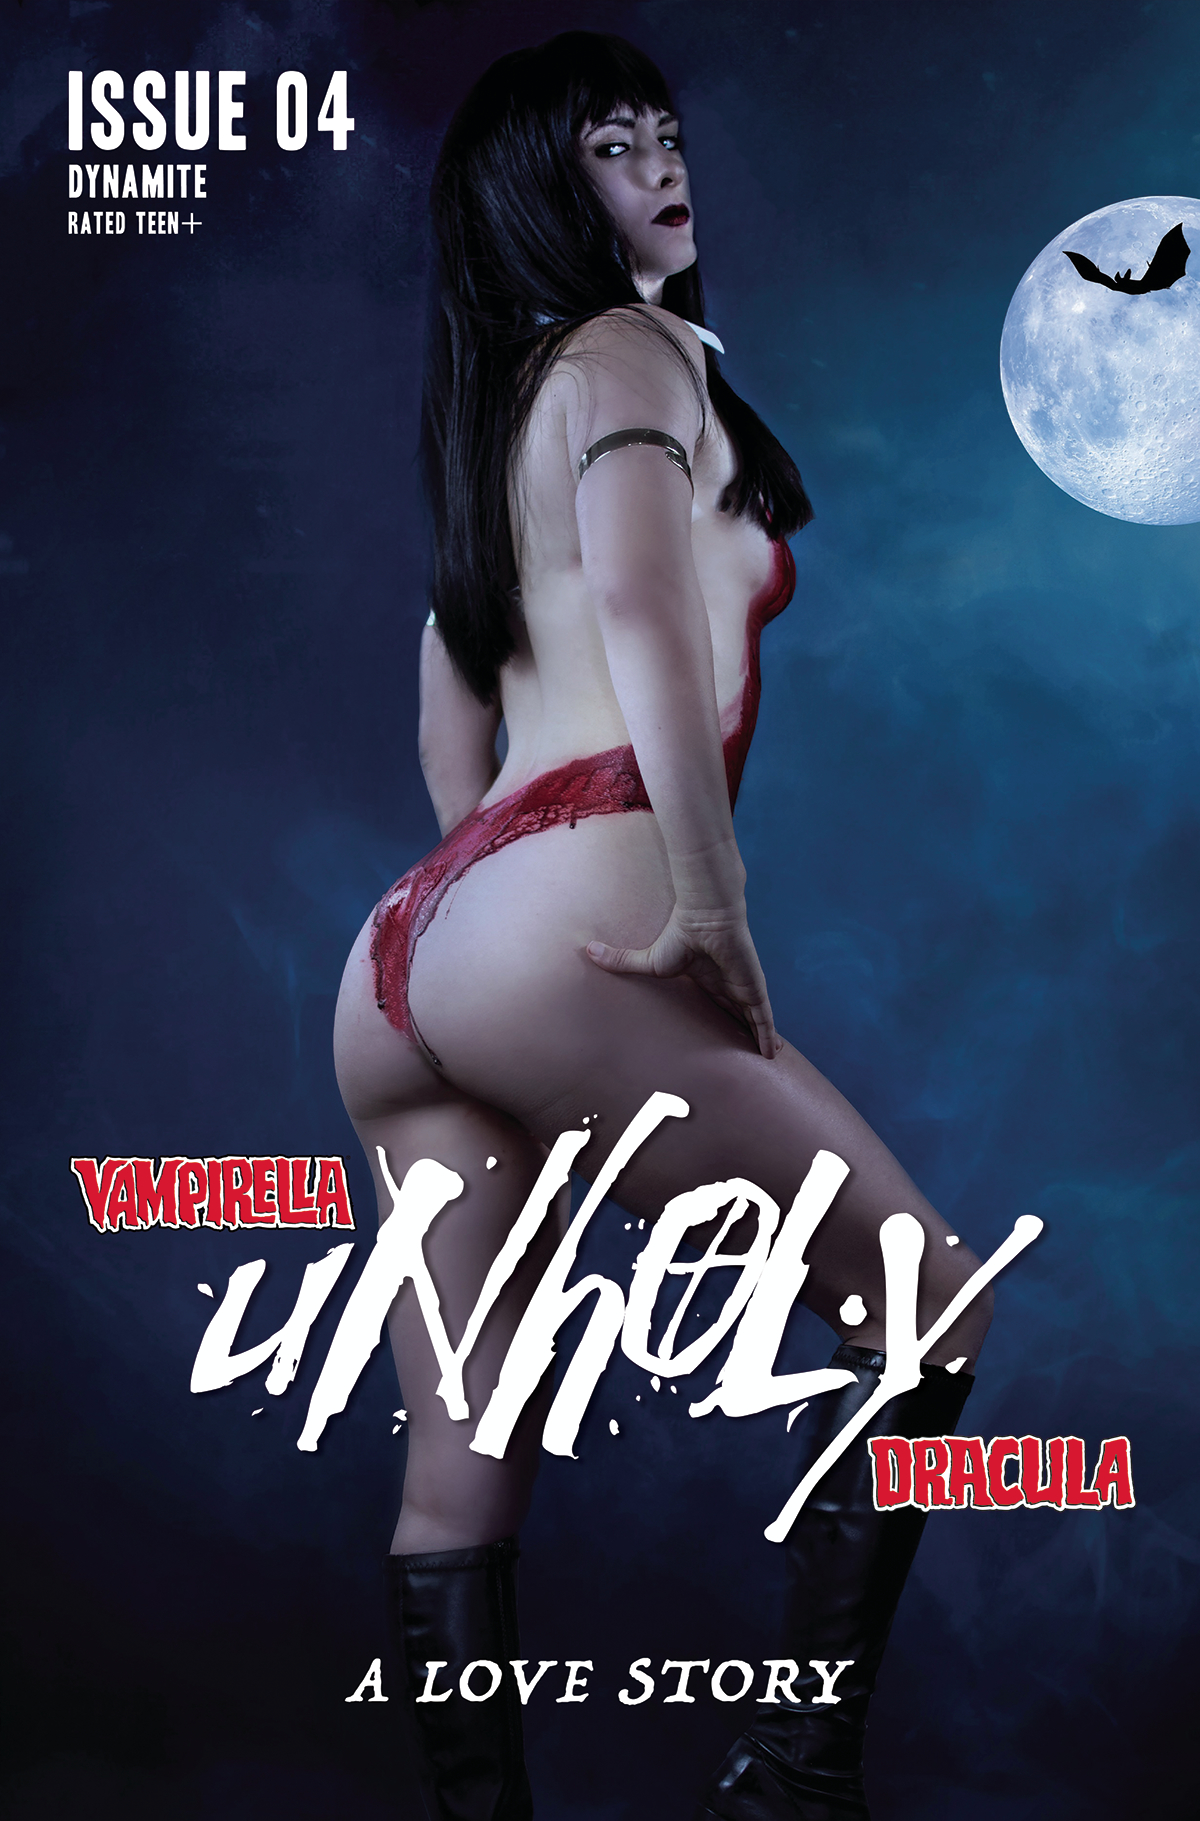 Vampirella Dracula Unholy #4 Cover E Cosplay